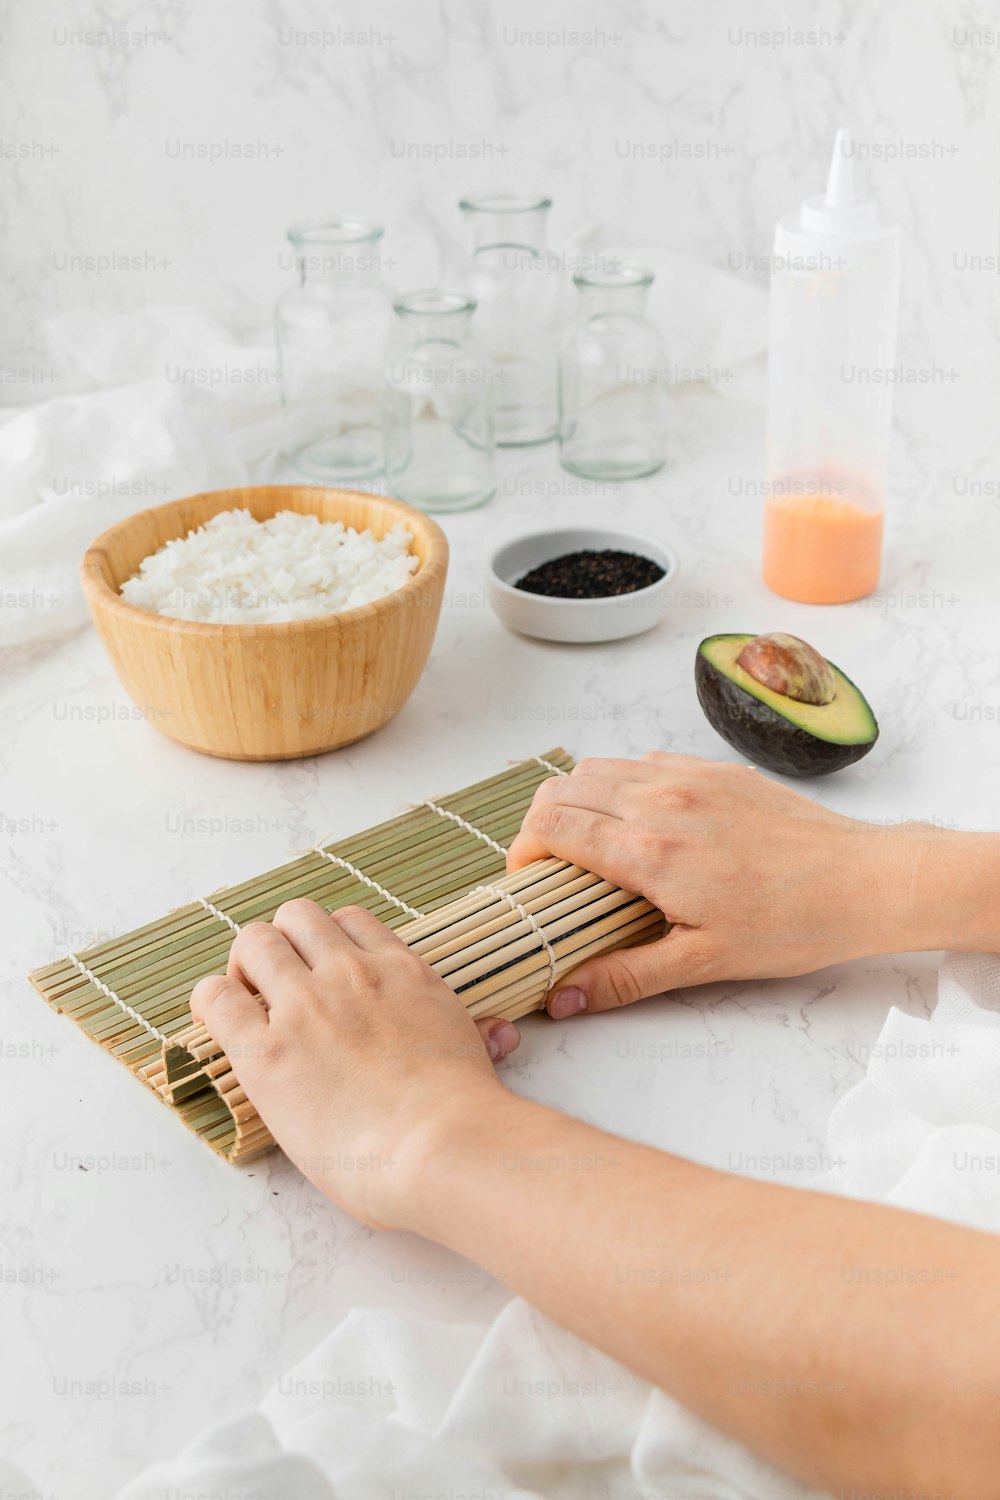 Una persona está enrollando una estera de bambú sobre una mesa